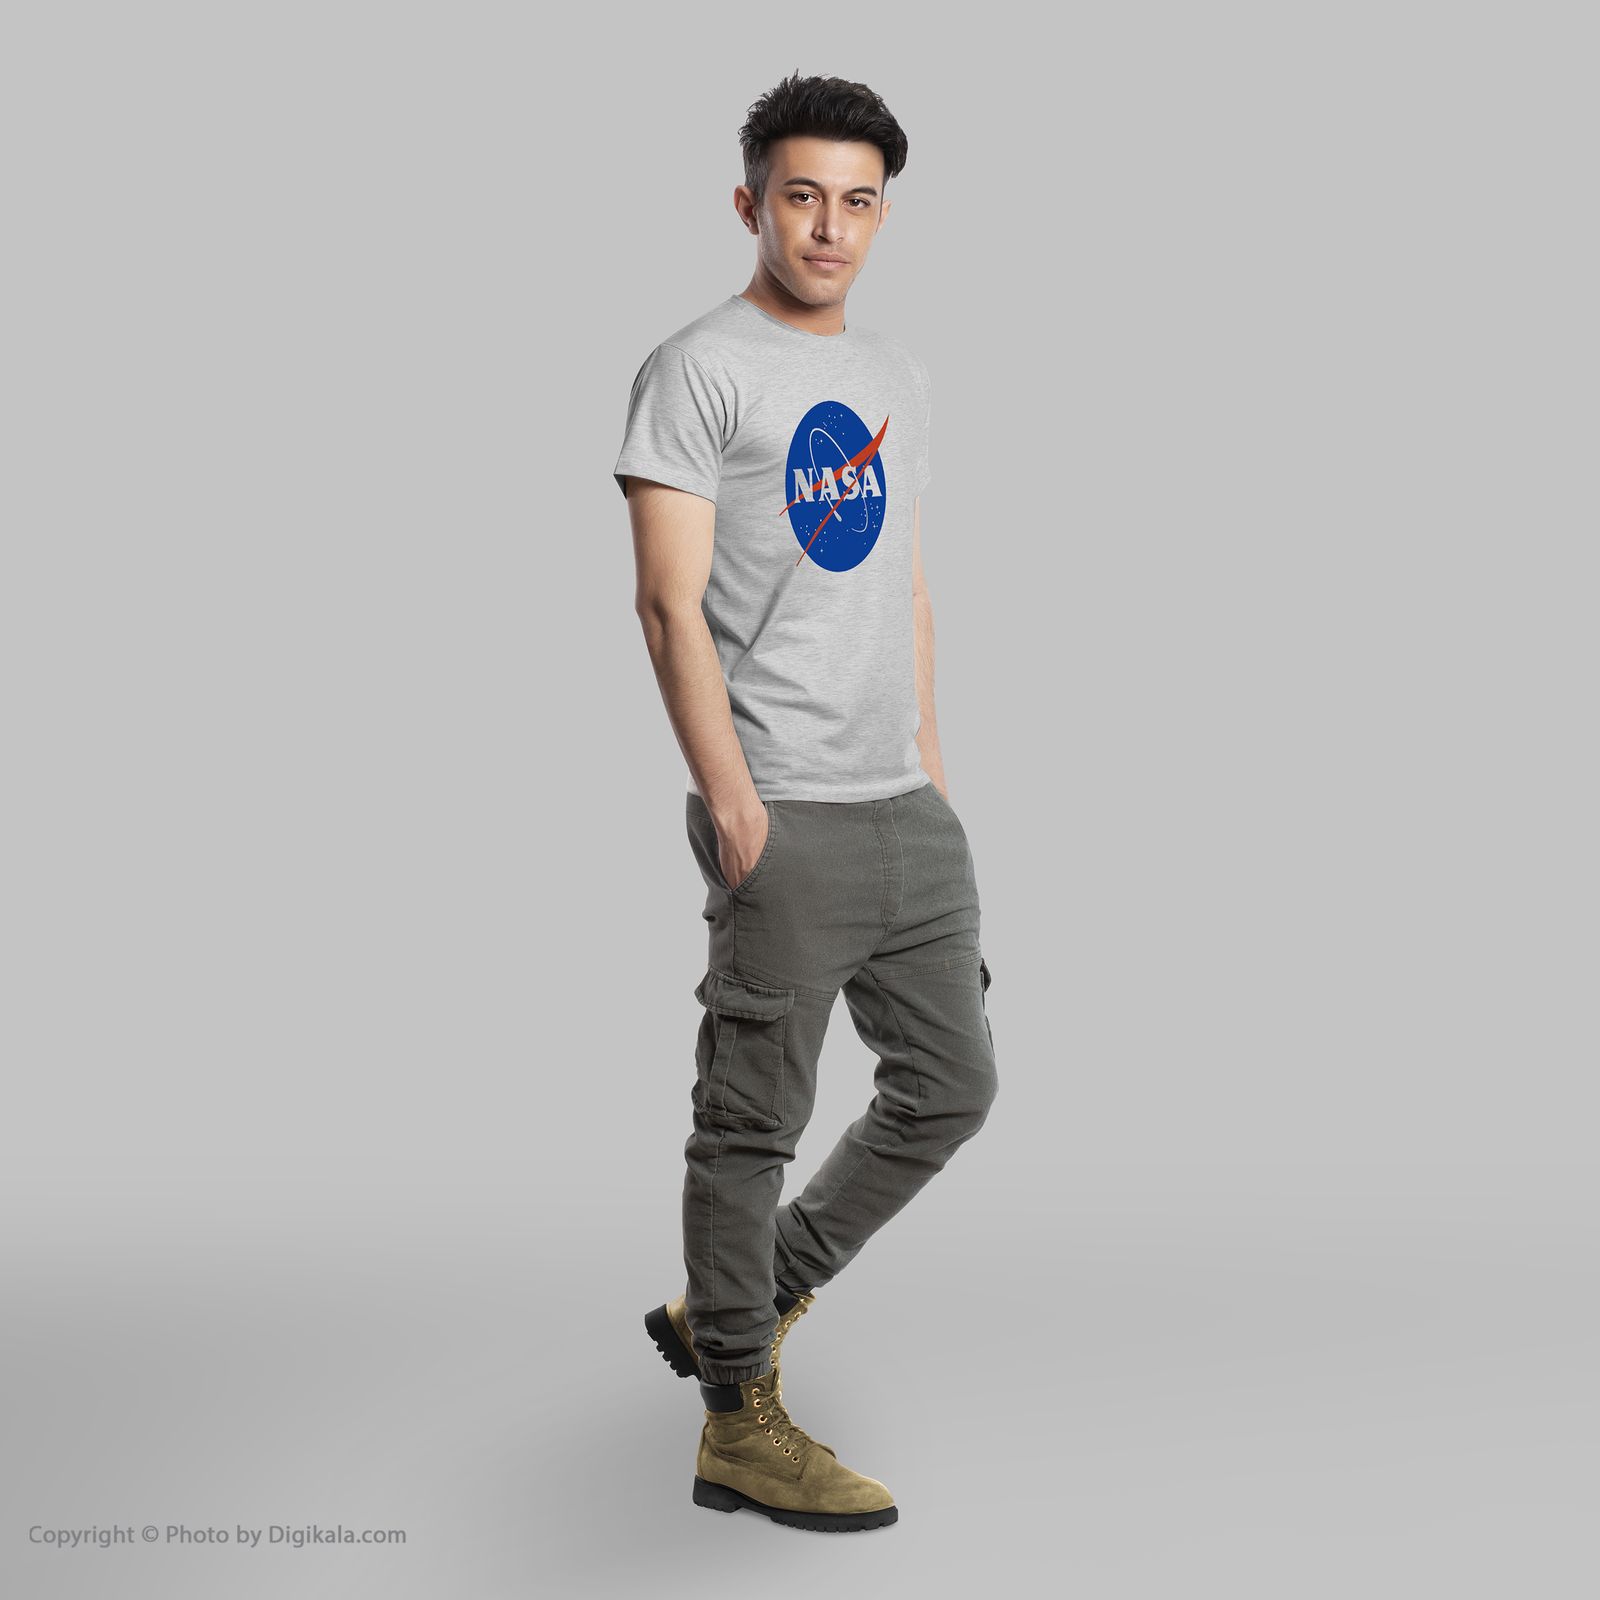 تی شرت مردانه به رسم طرح ناسا کد 285 -  - 6